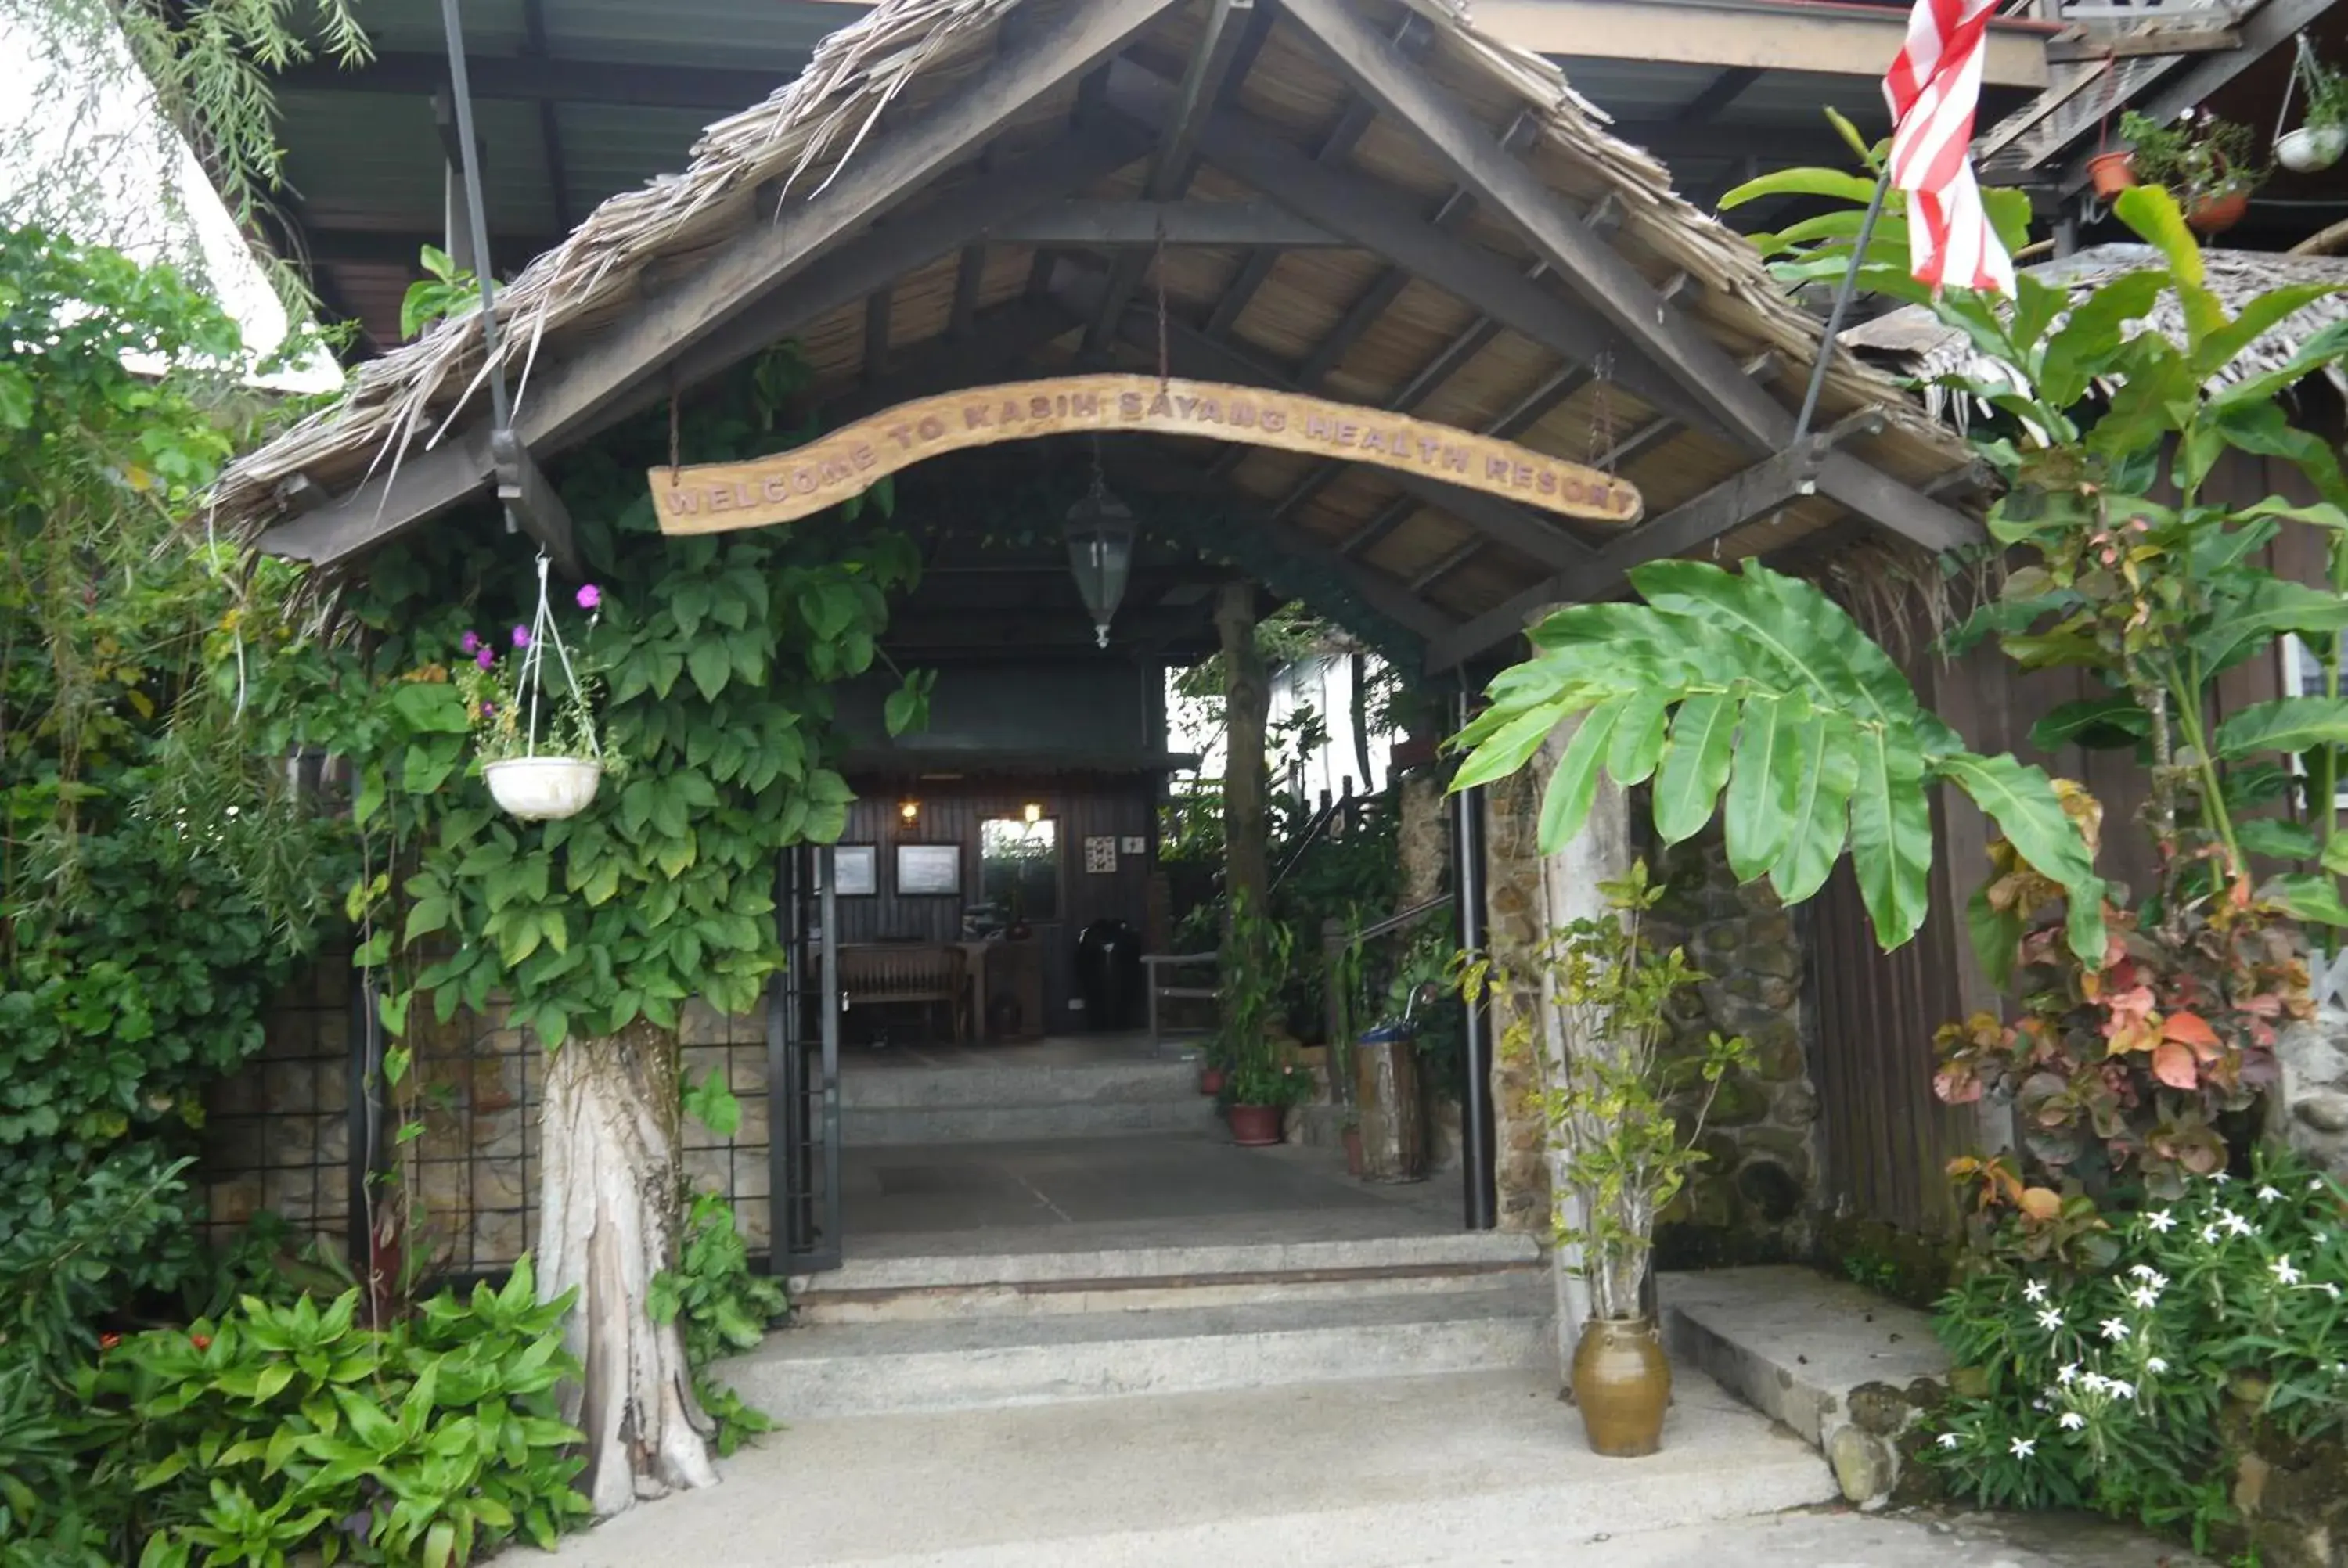 Area and facilities in Kasih Sayang Hill Resort